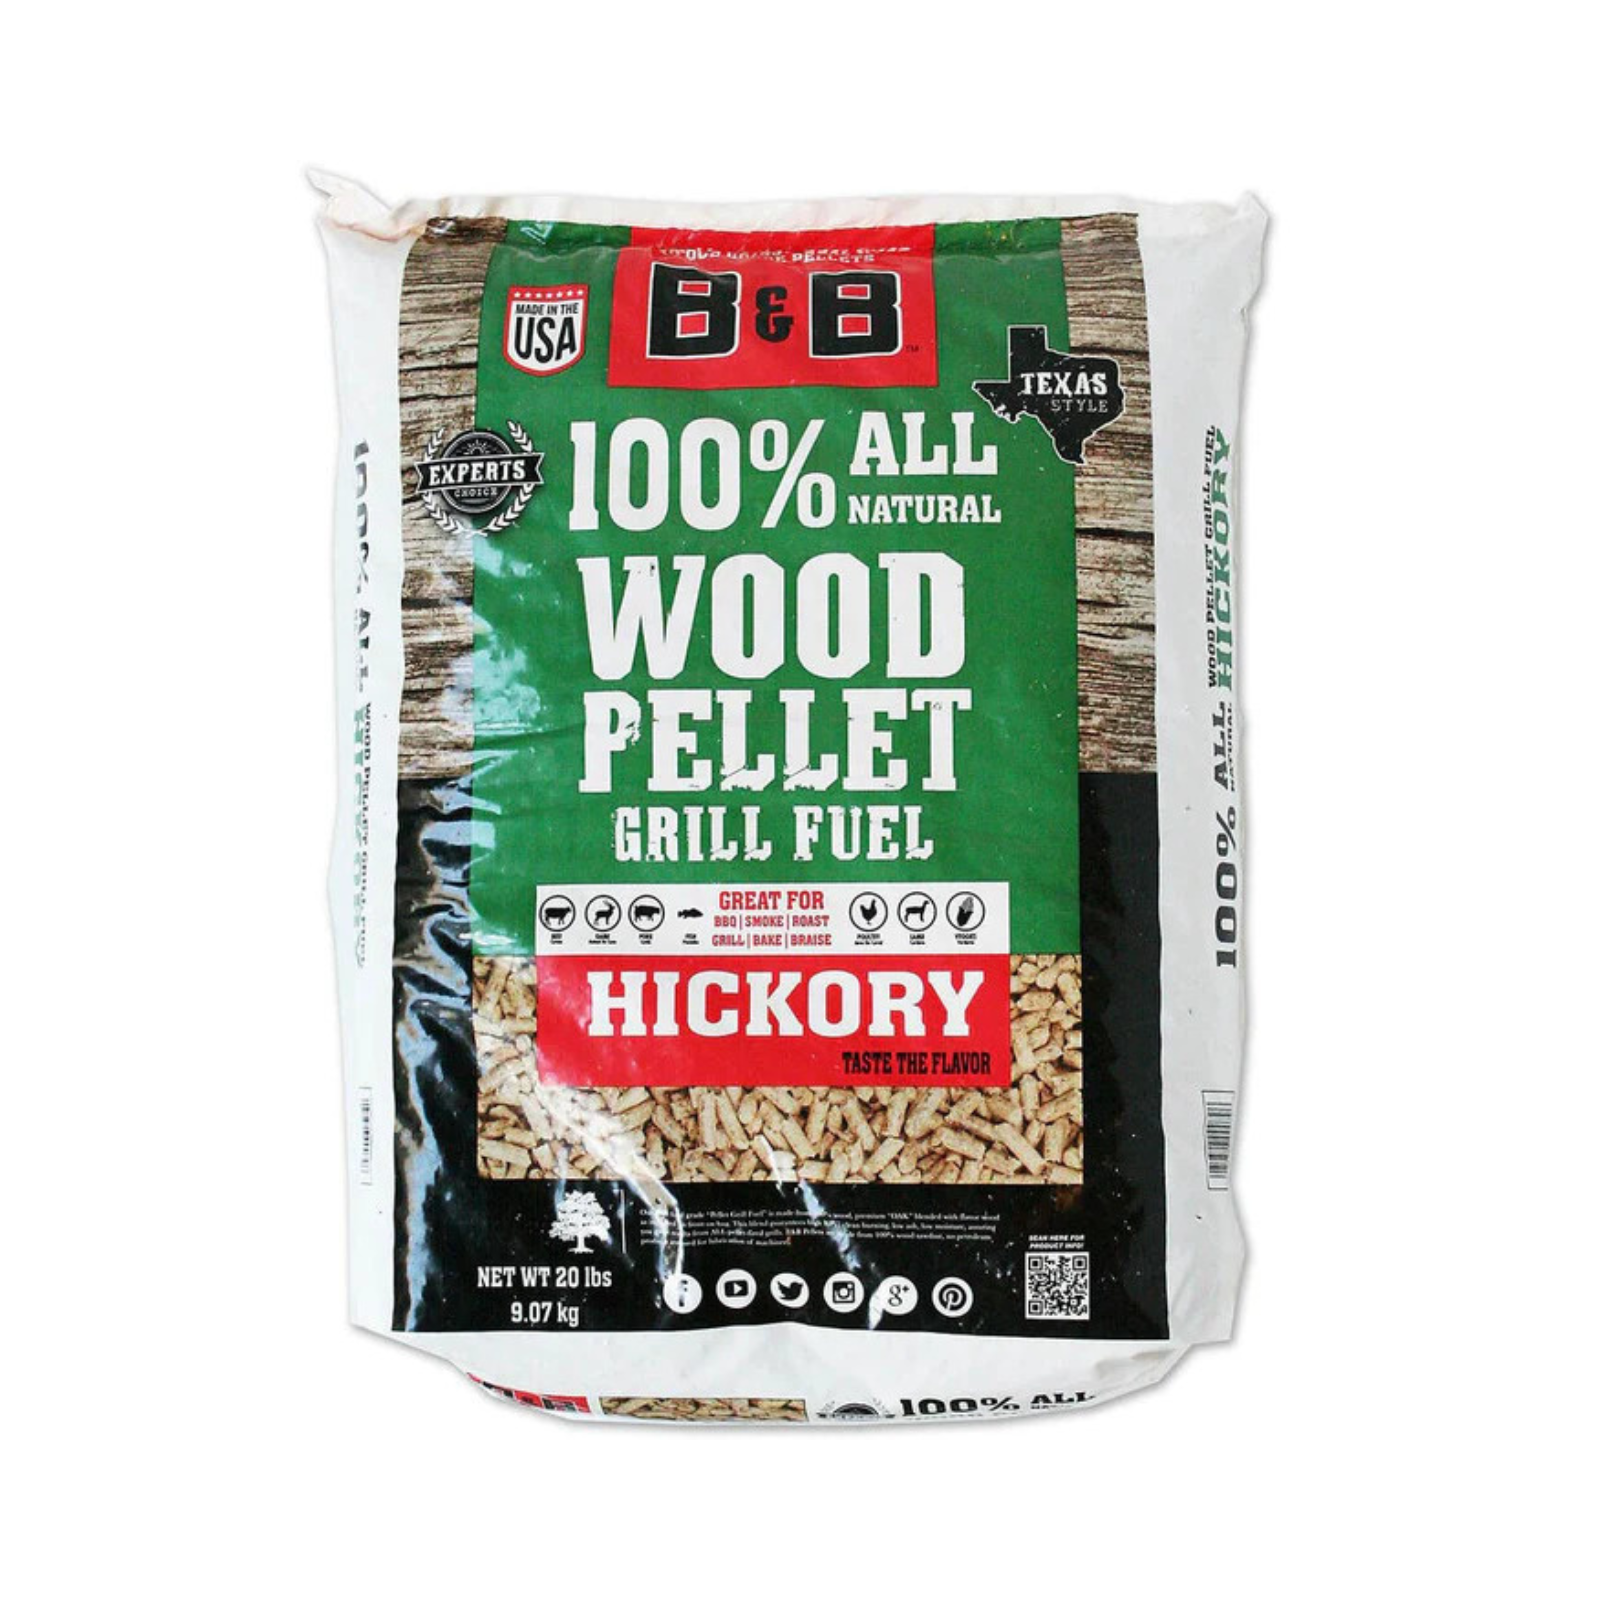 B&B Hickory Pellet Grill Fuel (20lb/9kg) - B00079